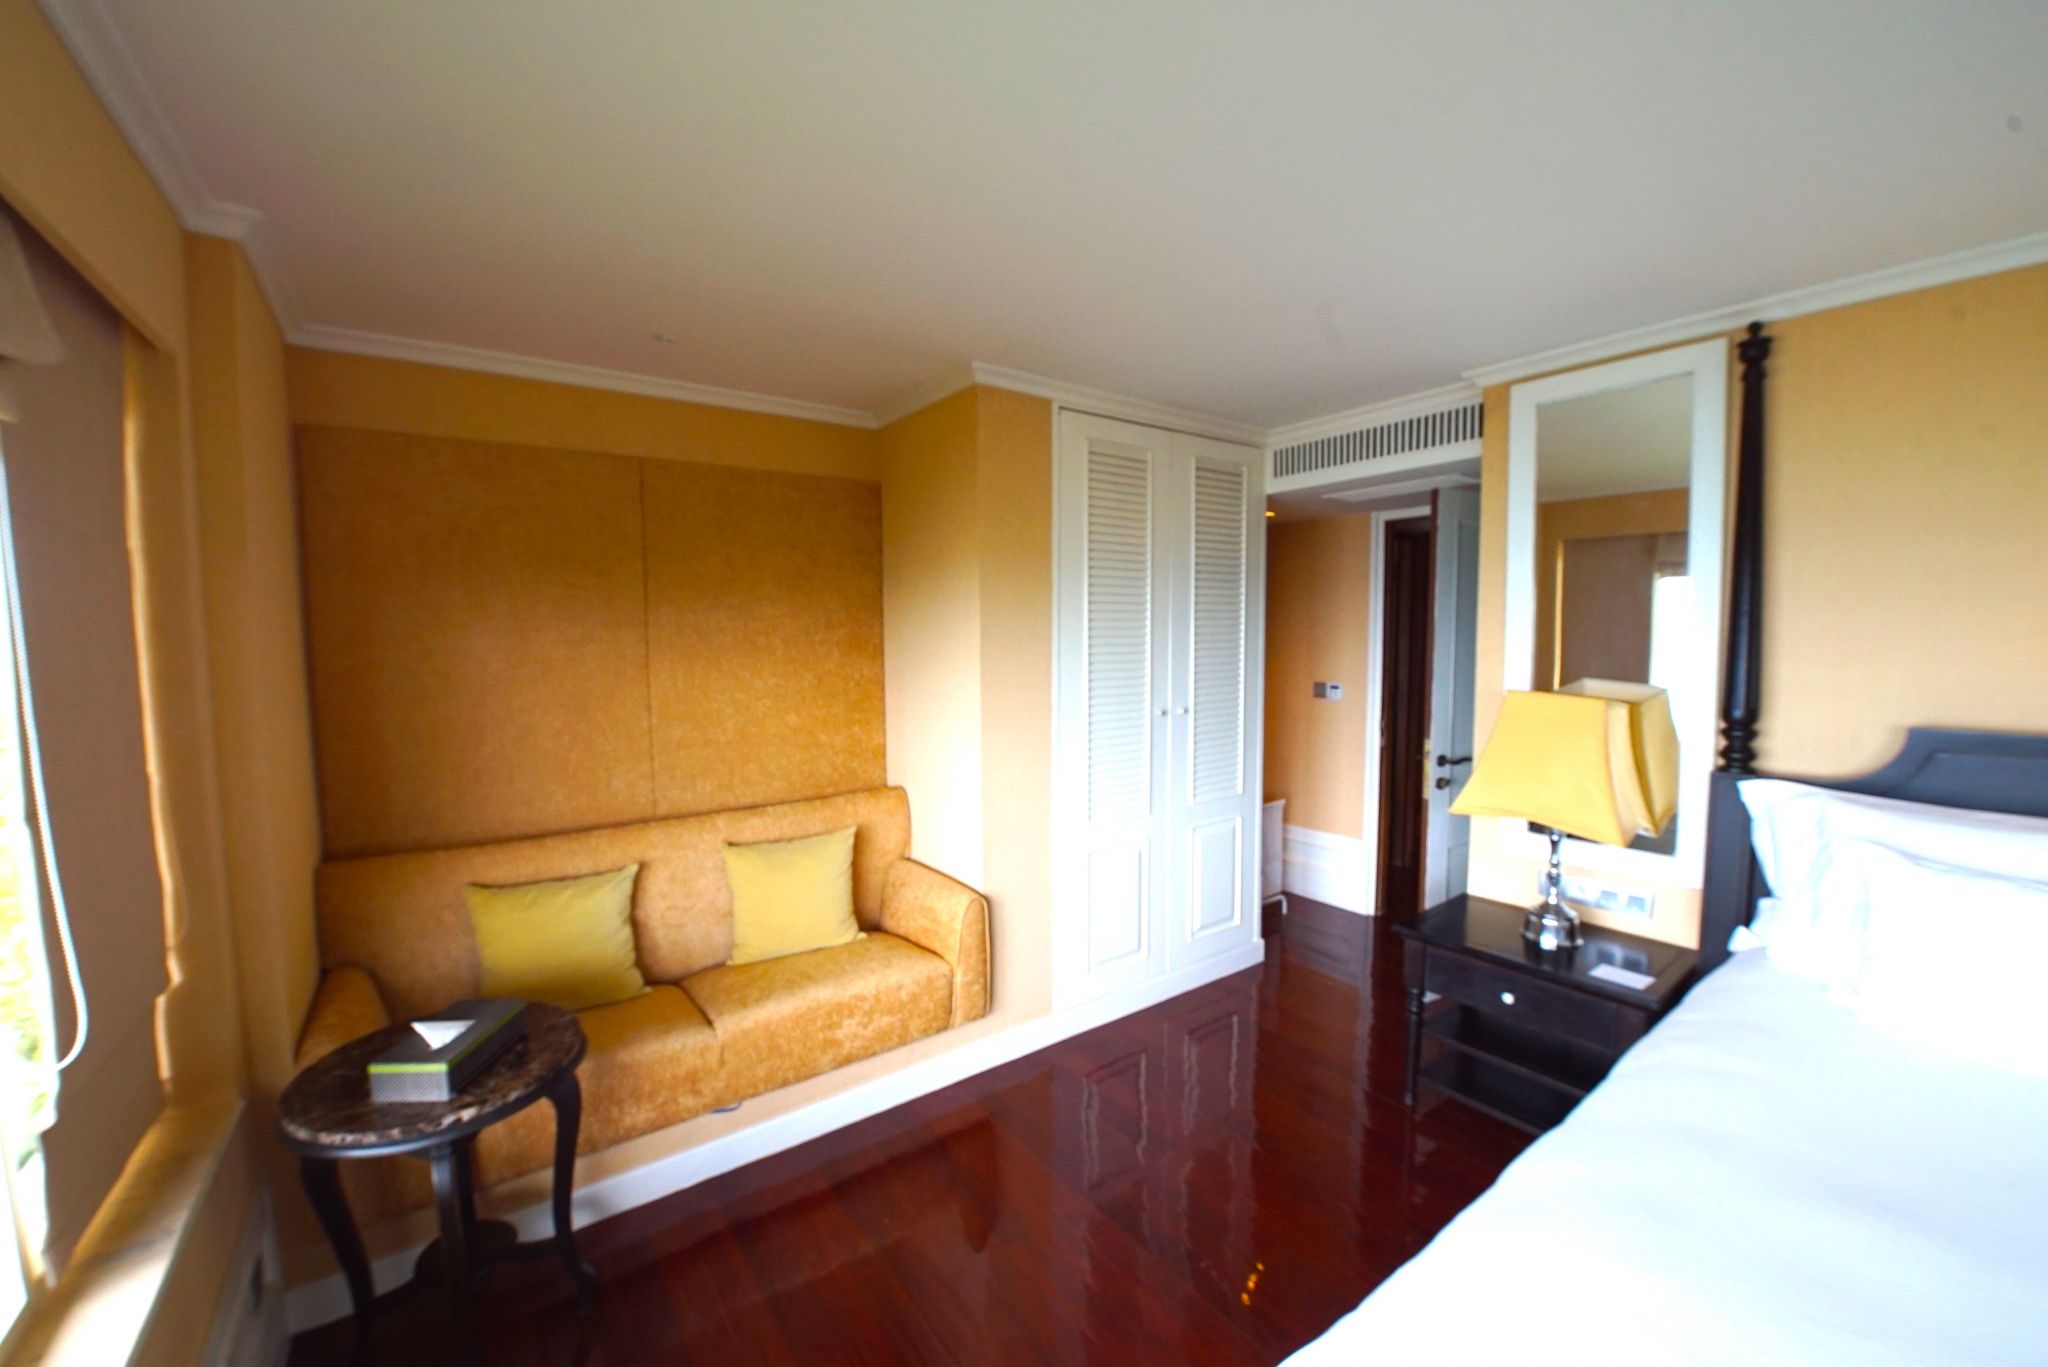  2 bedroom sea view Villa in Intercontinental Resort:  2 Bedroom Sea View Villa In Intercontinental Resort